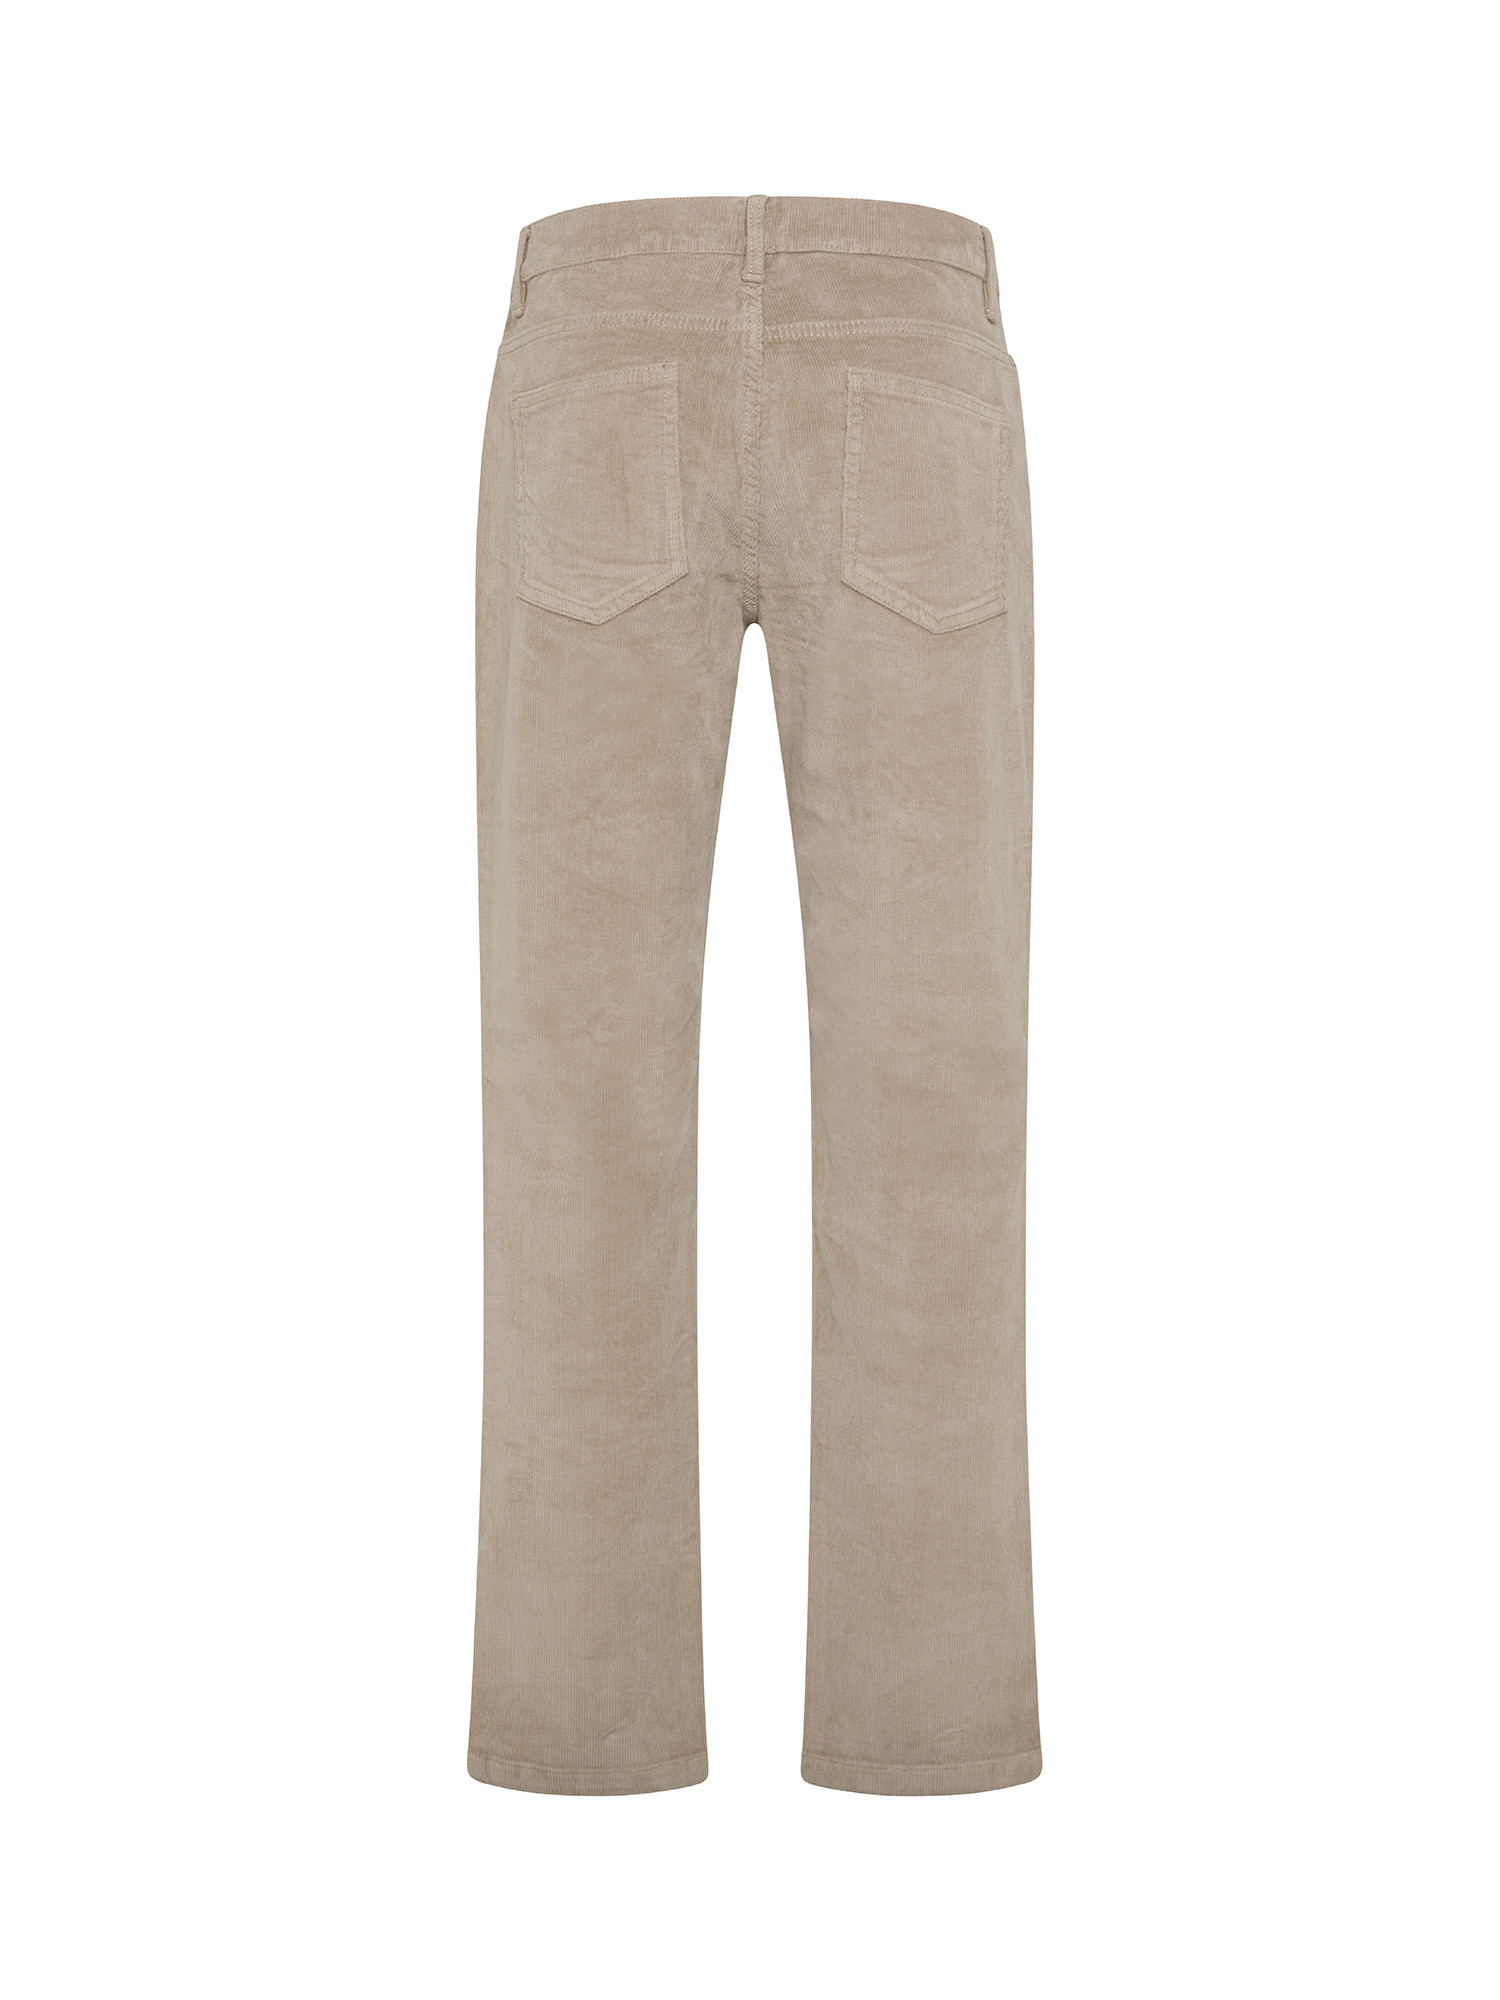 JCT - Slim fit five-pocket velvet trousers, Dove Grey, large image number 1